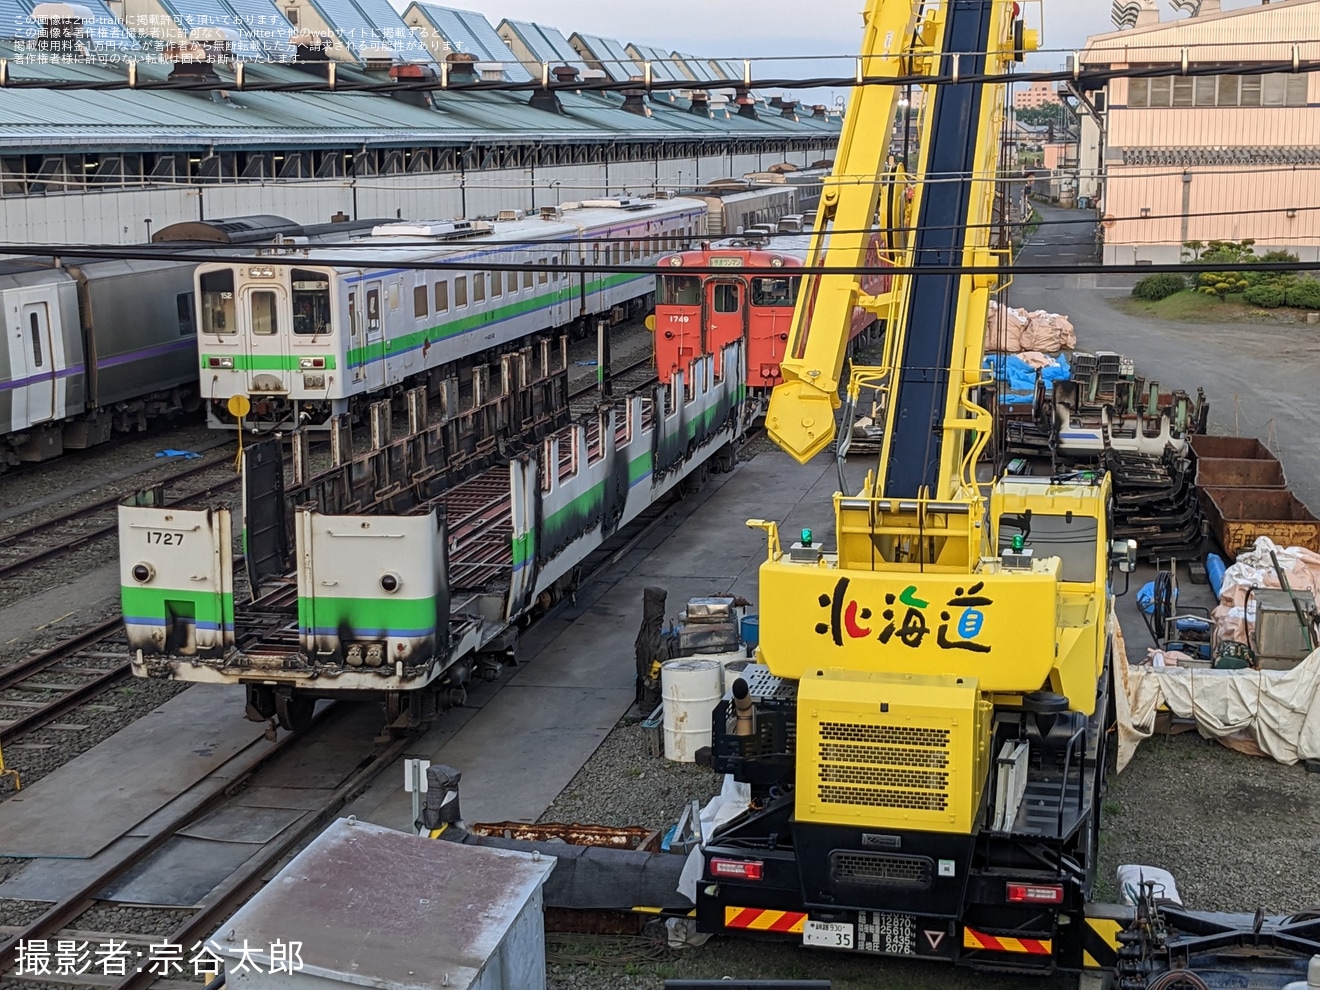 【JR北】キハ40-1727が釧路運輸車両所で解体作業中の拡大写真